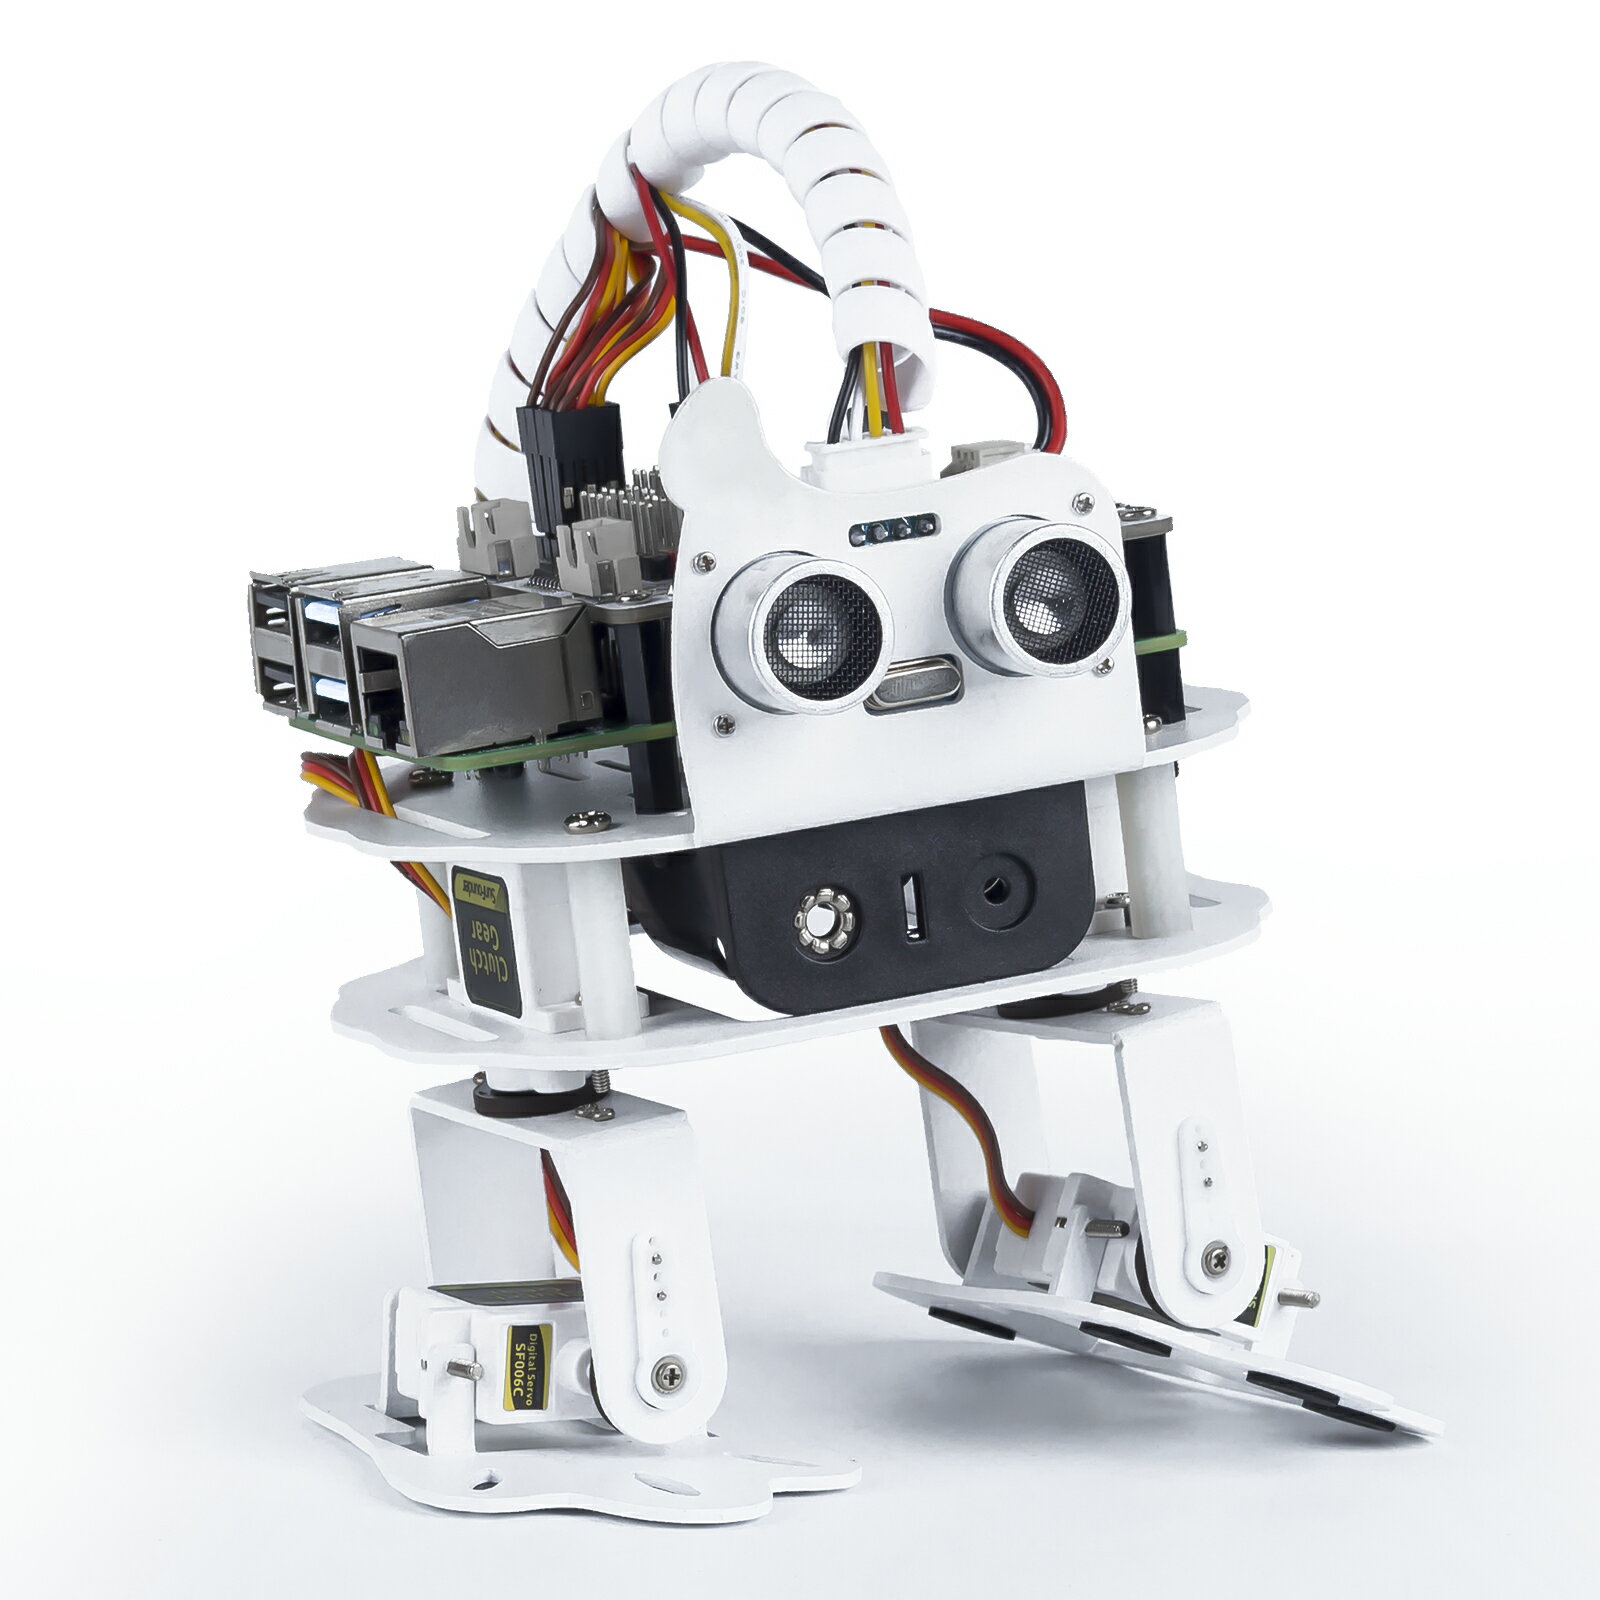 Raspberry Pi ロボット Sloth ラズベリーパイ AI プログラミング 4 DOF 2足ロボットキット 多機能DIY ロボット スマホ タブレット 遠隔操作 Raspberry Pi 4B 3B+ 3B SunFounder(Raspberry Pi ボードは付属されていません) 1